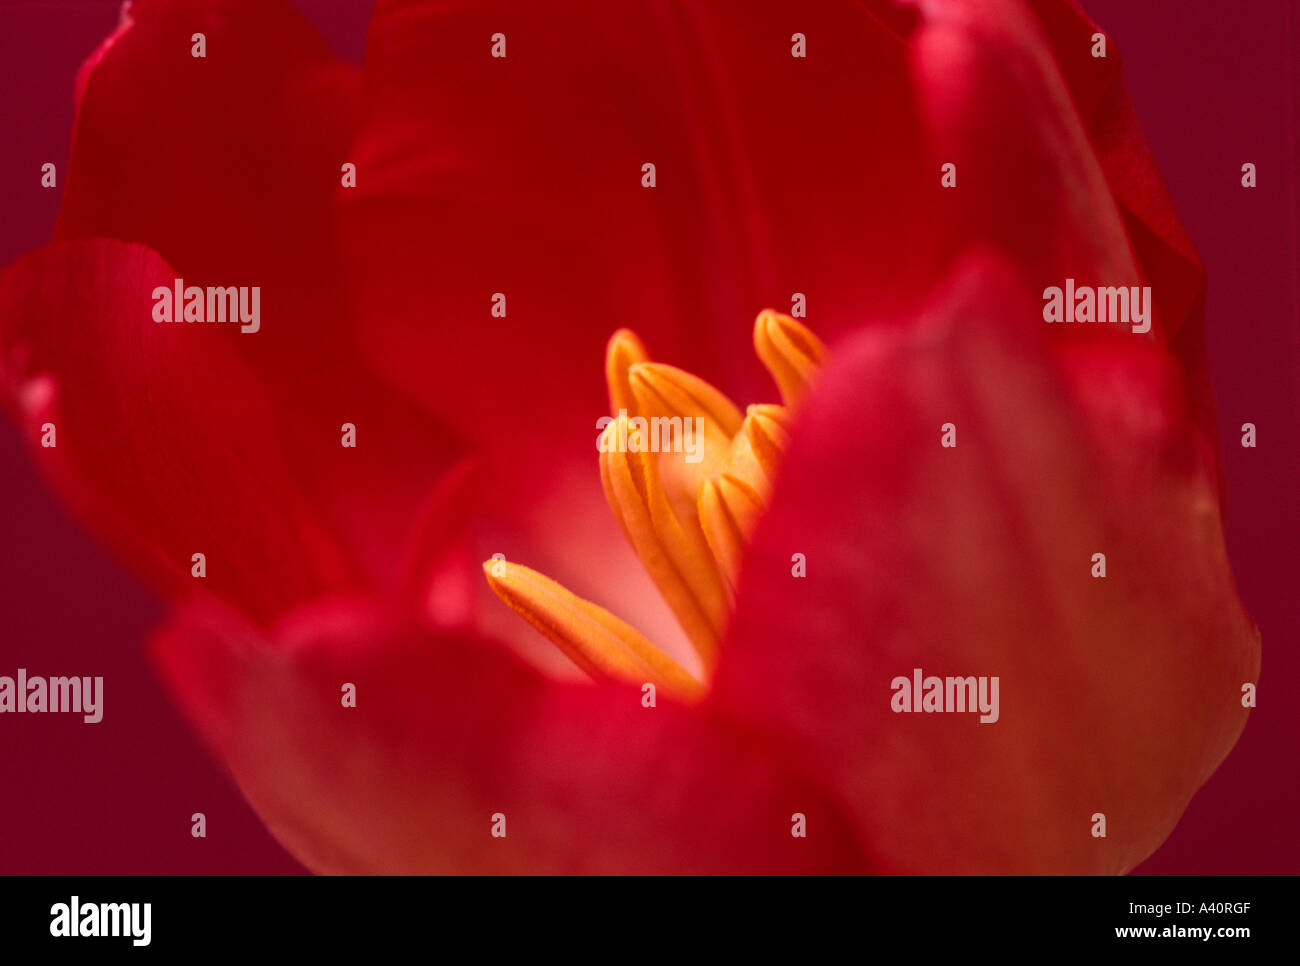 Contemporanea orizzontale studio immagine del tulipano rosso su sfondo rosso con il fuoco selettivo su central stami Foto Stock